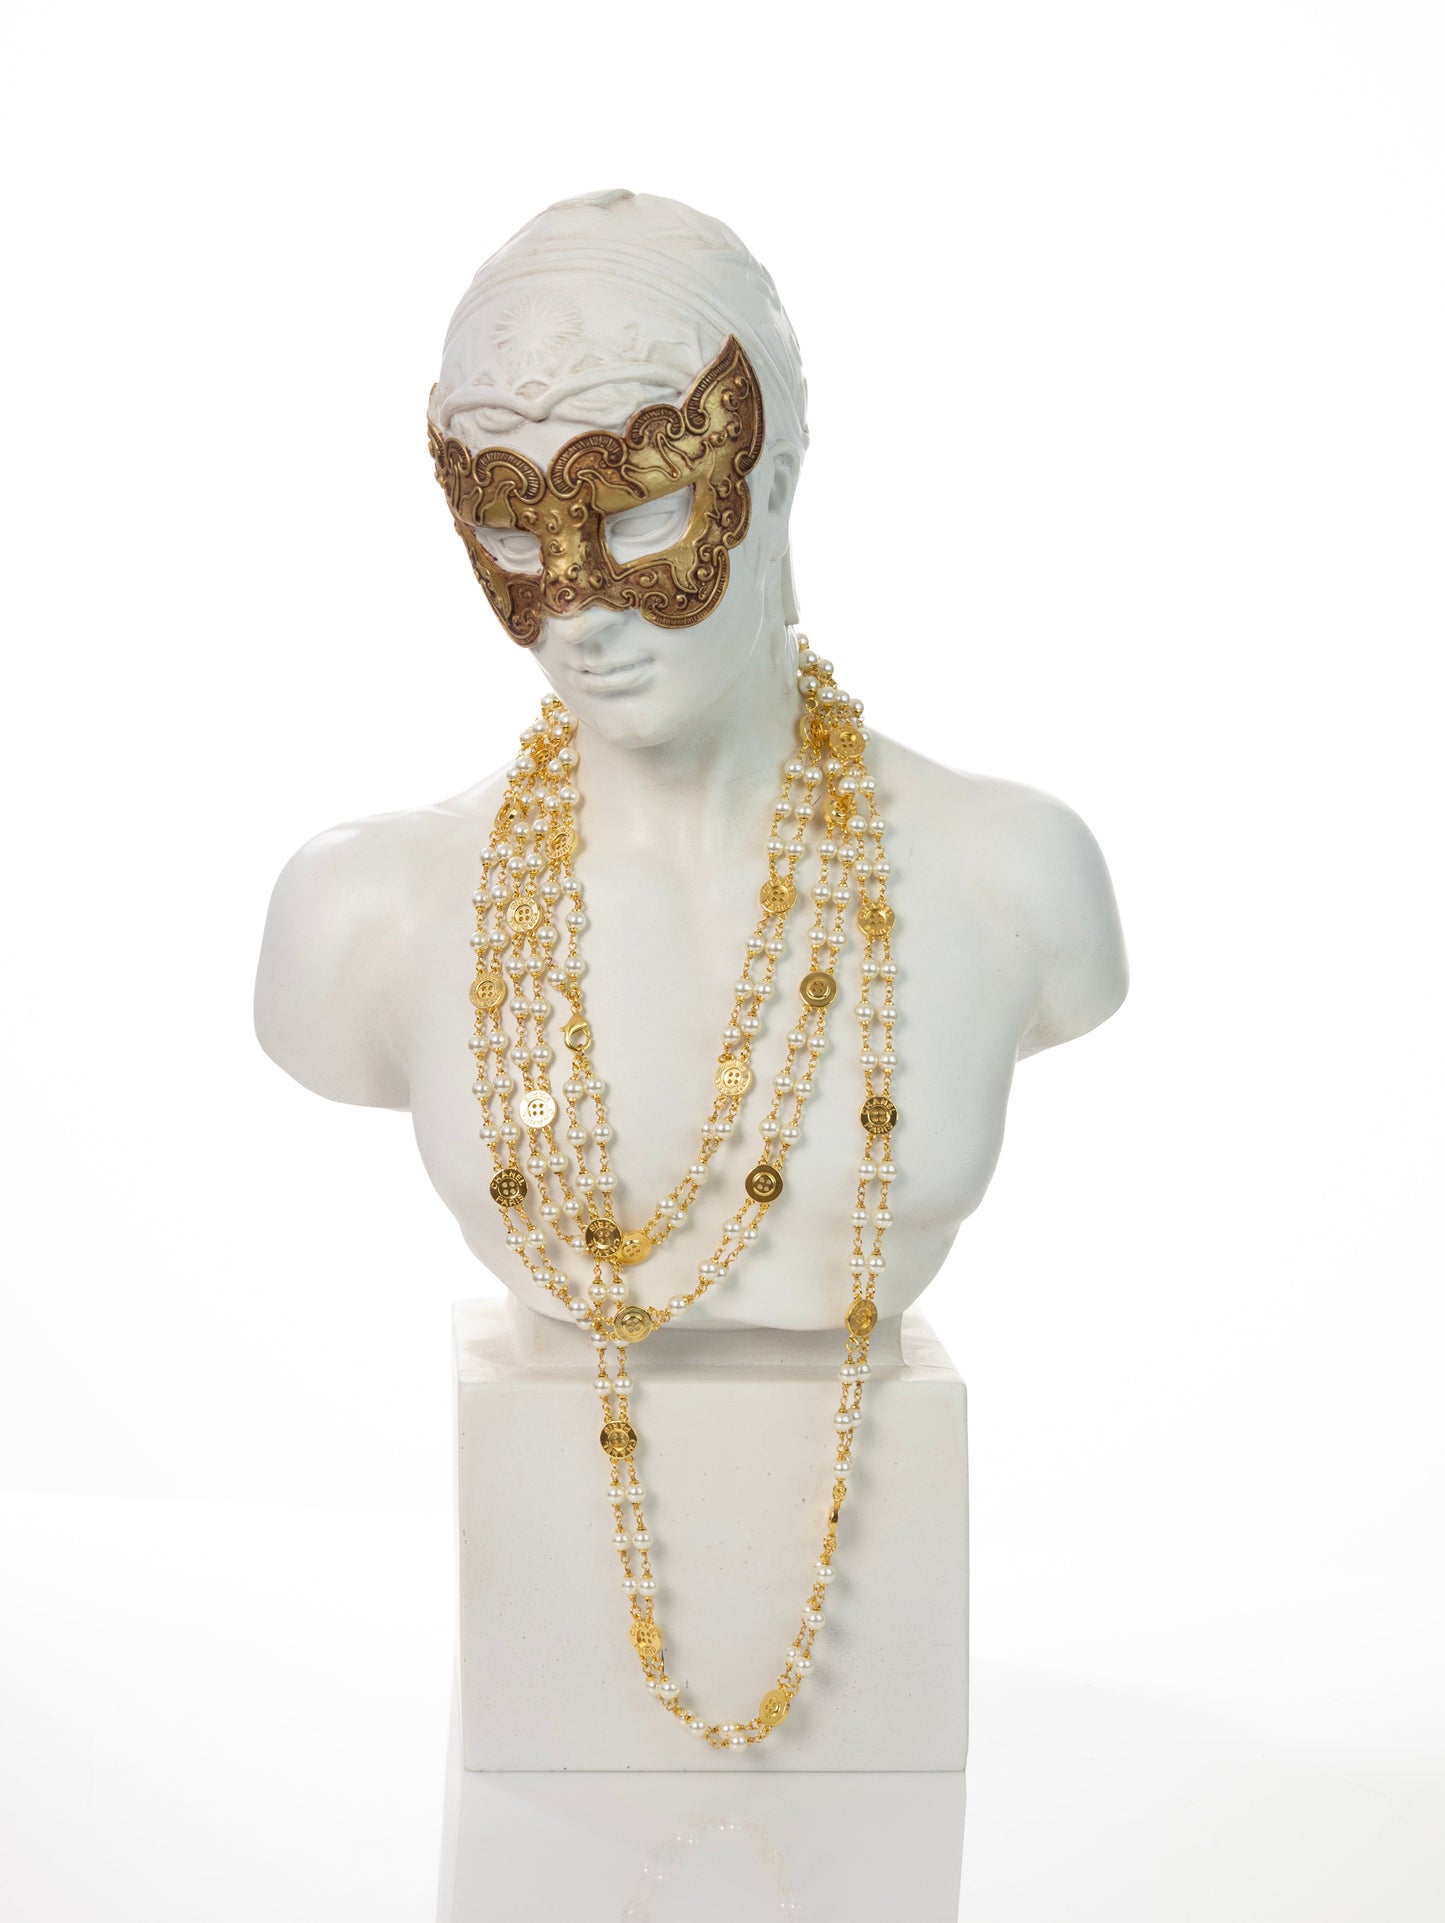 CHANEL Halskette Perlen Gold 2-reihig Perlenkette